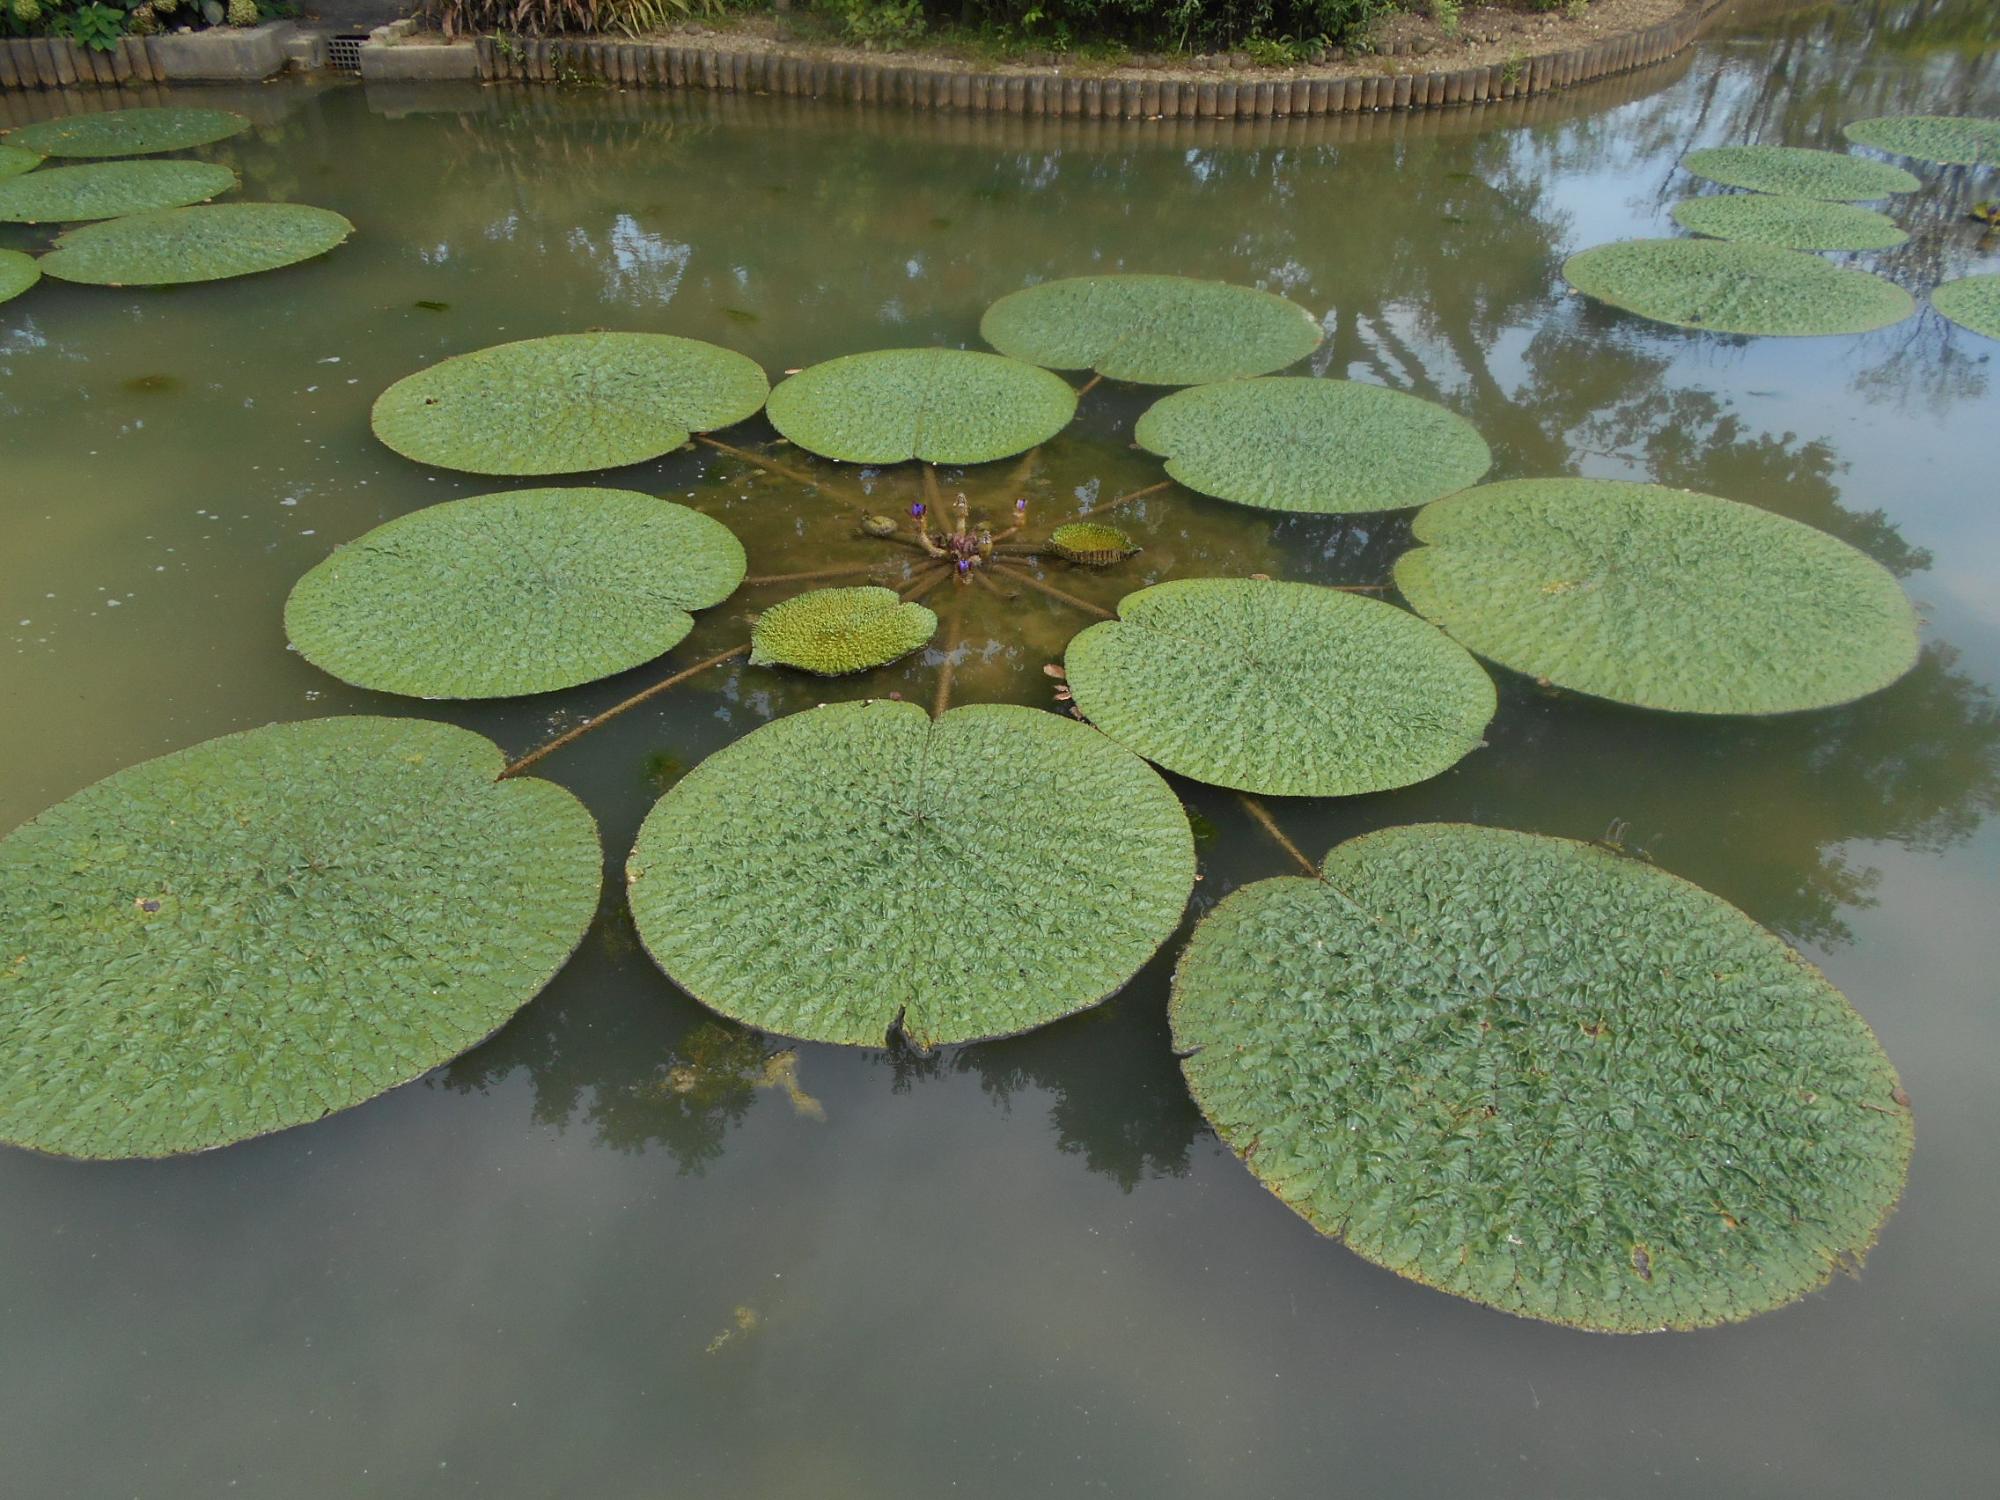 オニバス池では、オニバスが巨大な葉を水面に広げています。葉や葉柄には大きな硬く鋭いトゲが生えています。